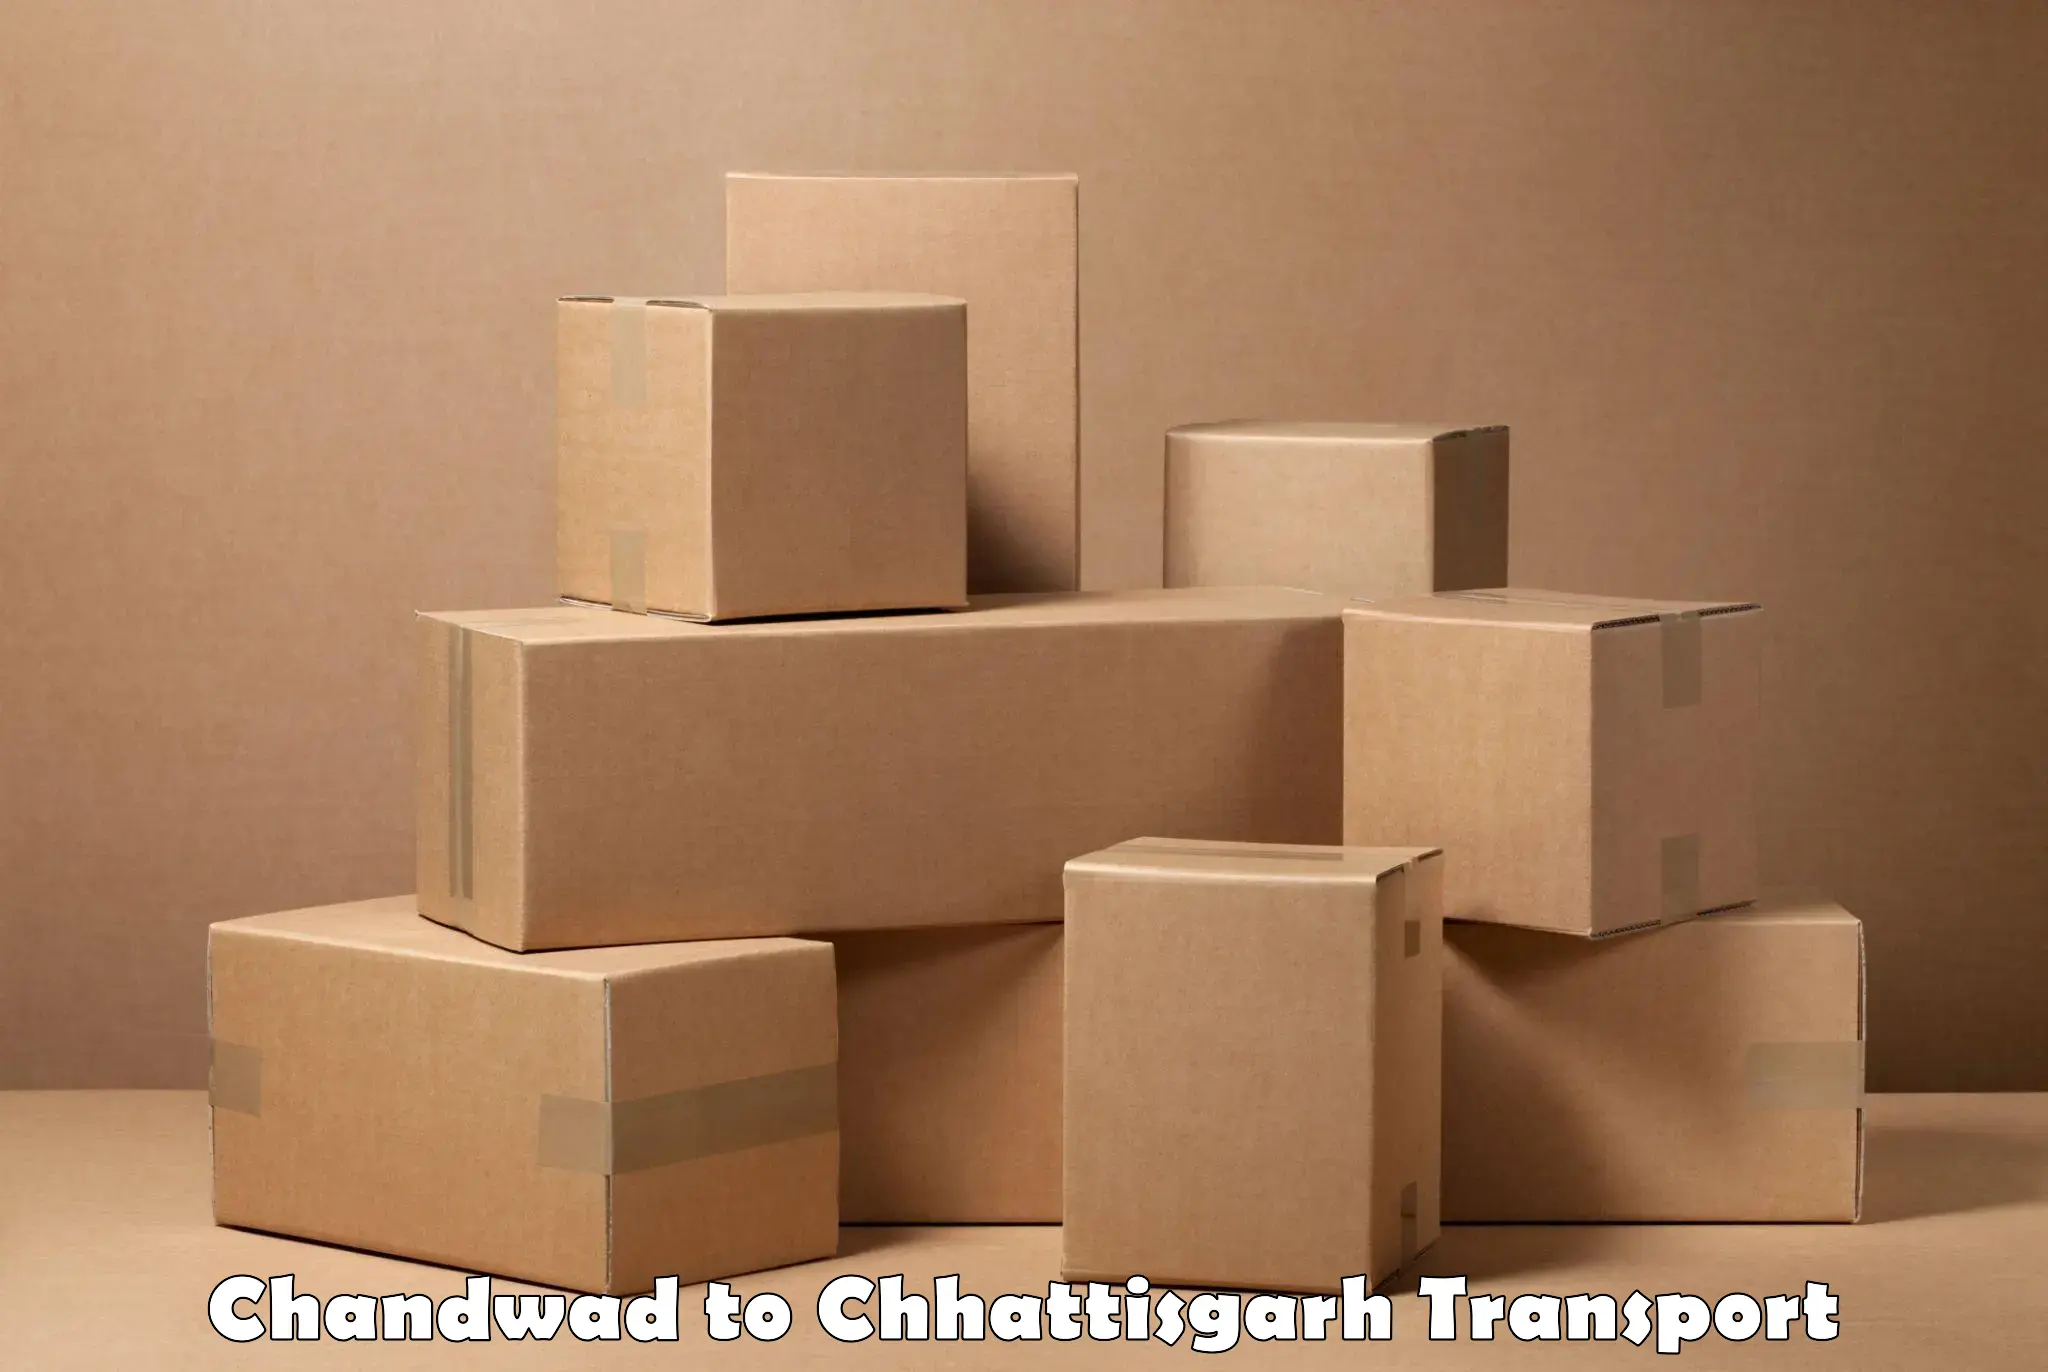 Vehicle parcel service in Chandwad to Wadrafnagar